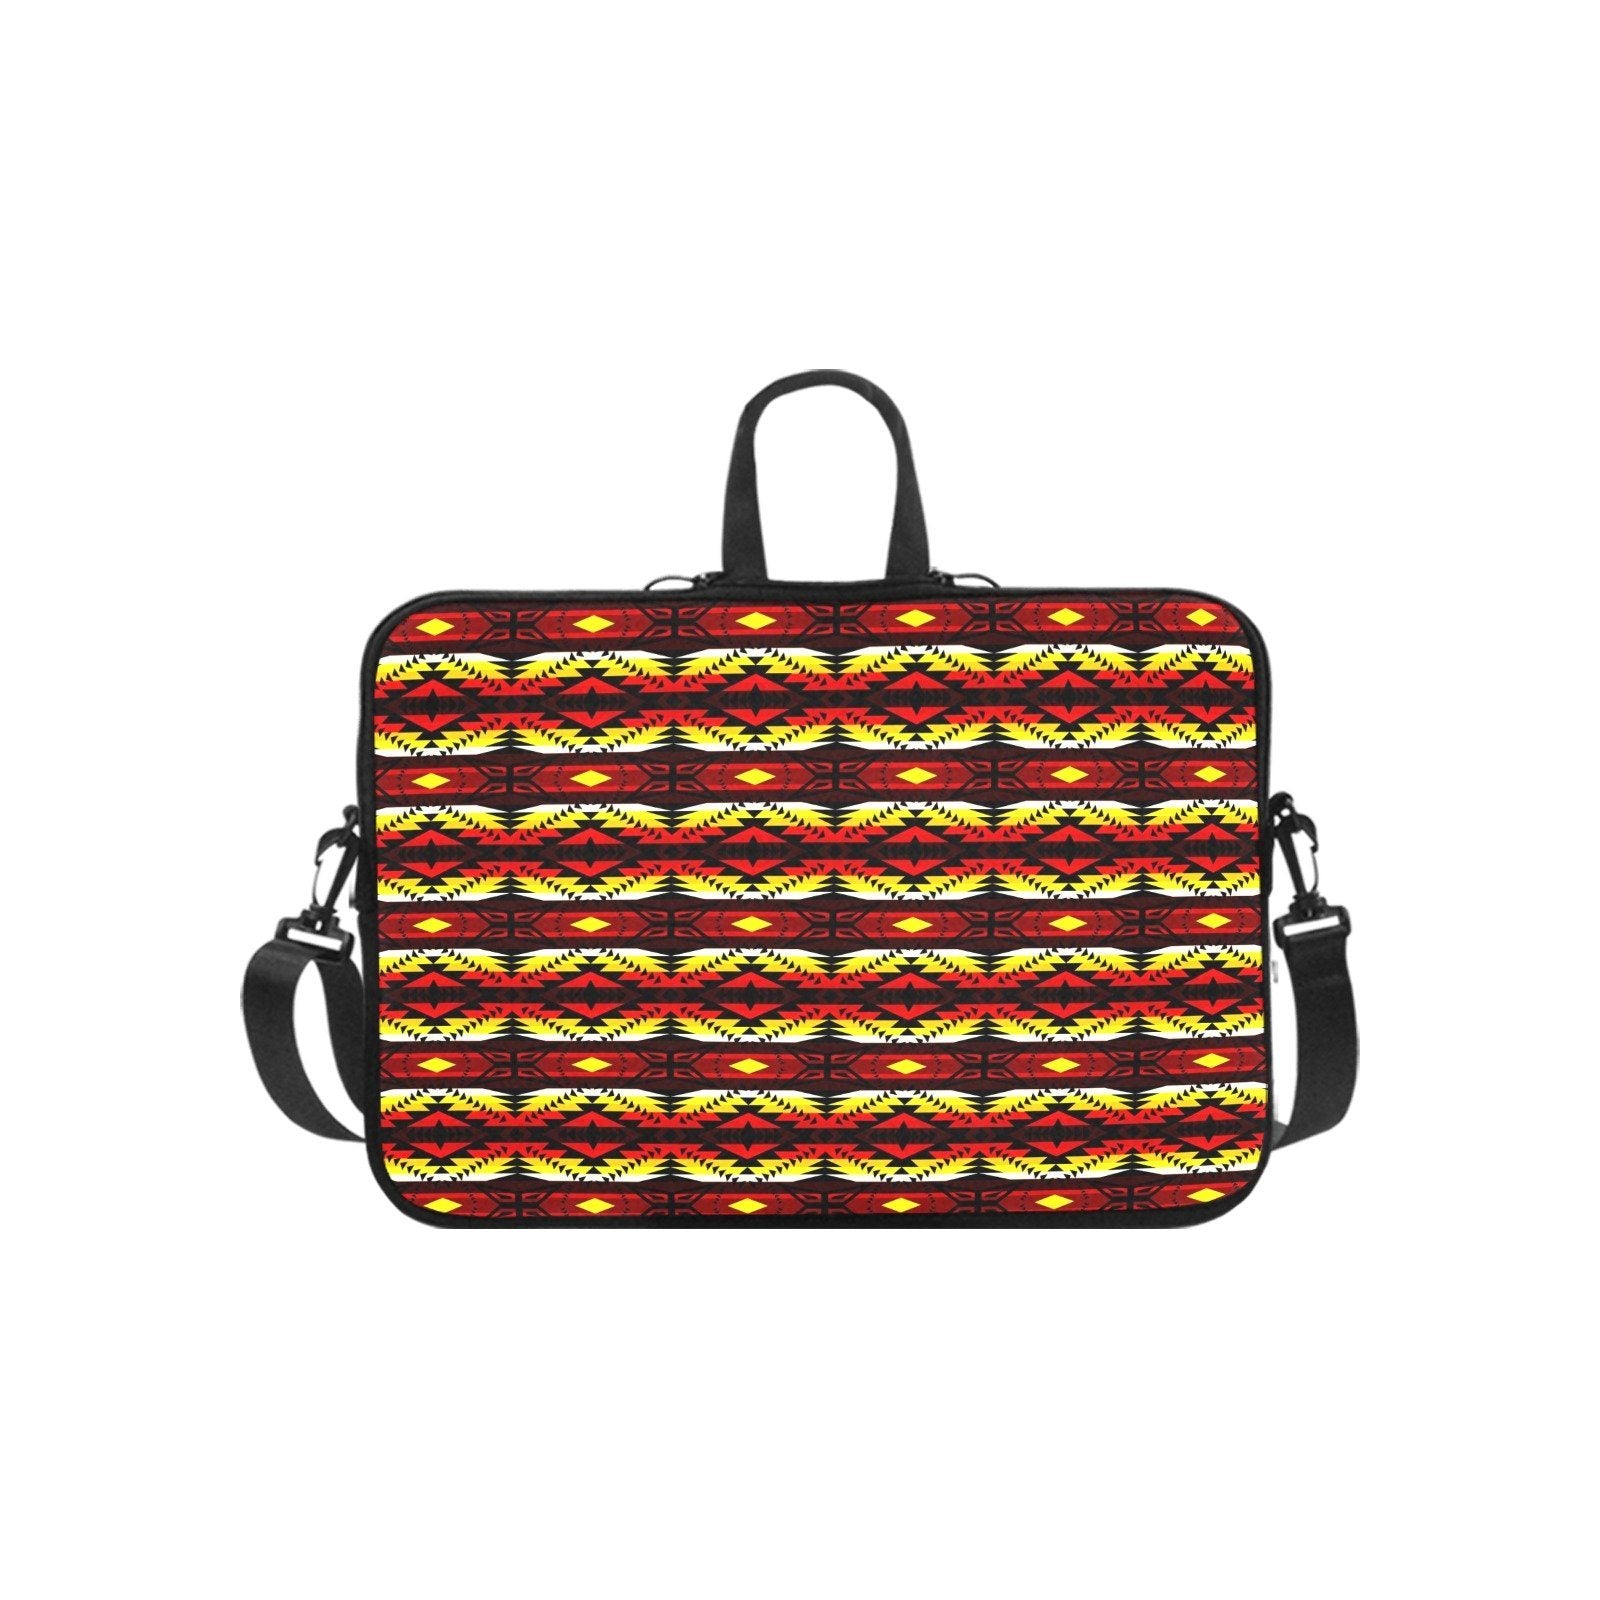 Canyon War Party Laptop Handbags 17" bag e-joyer 